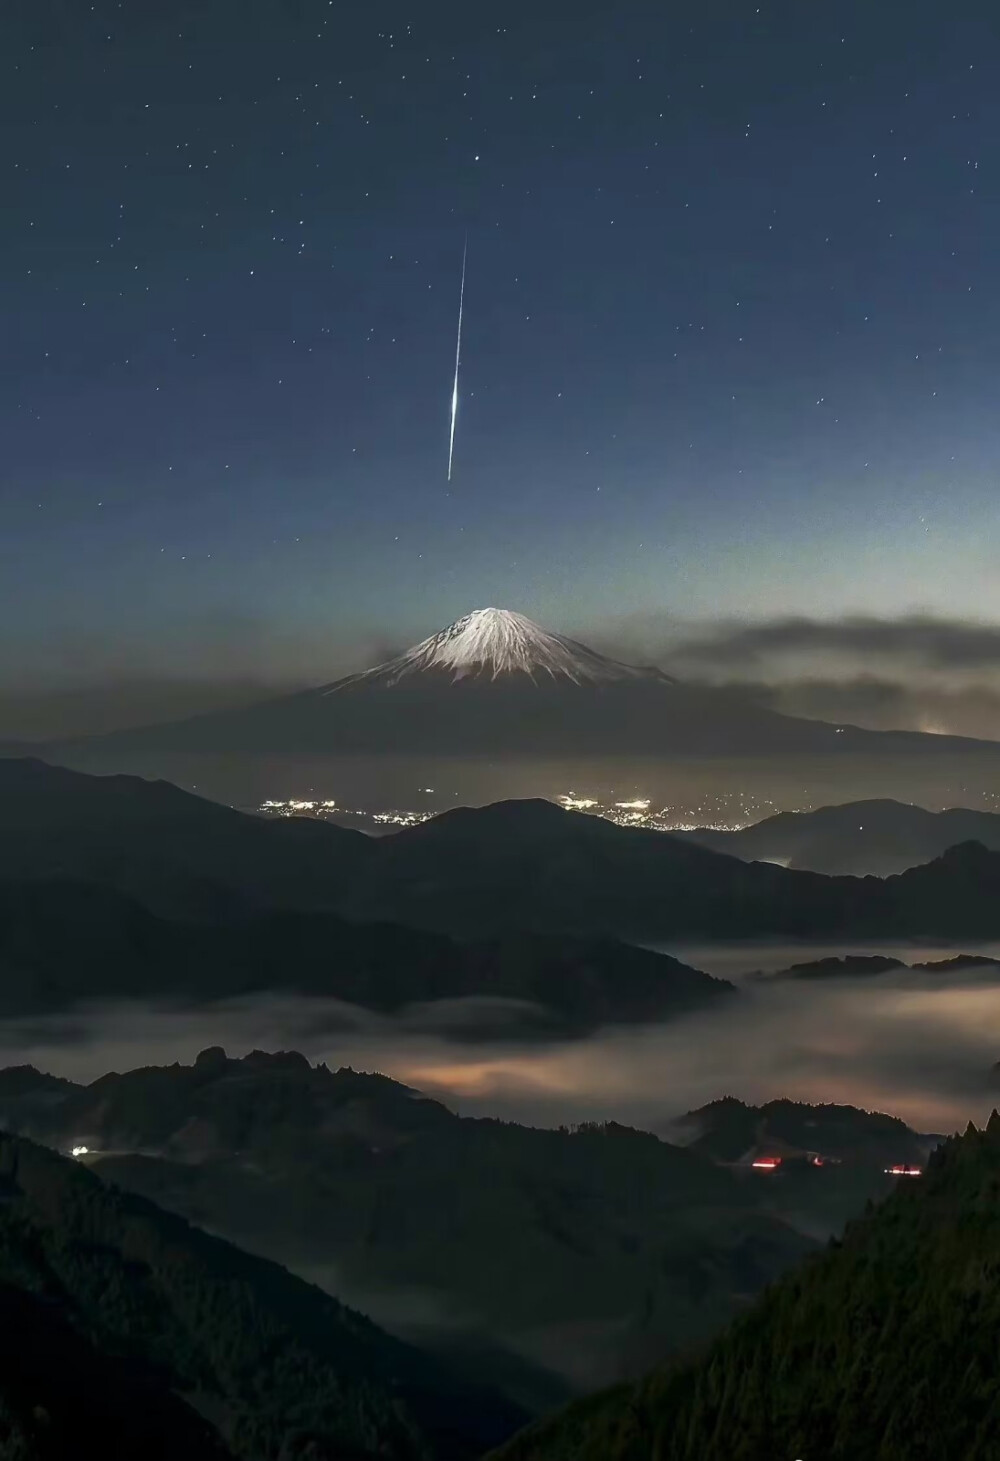 日本摄影师拍摄到的富士山流星。
大自然真是奇妙呀。 ​